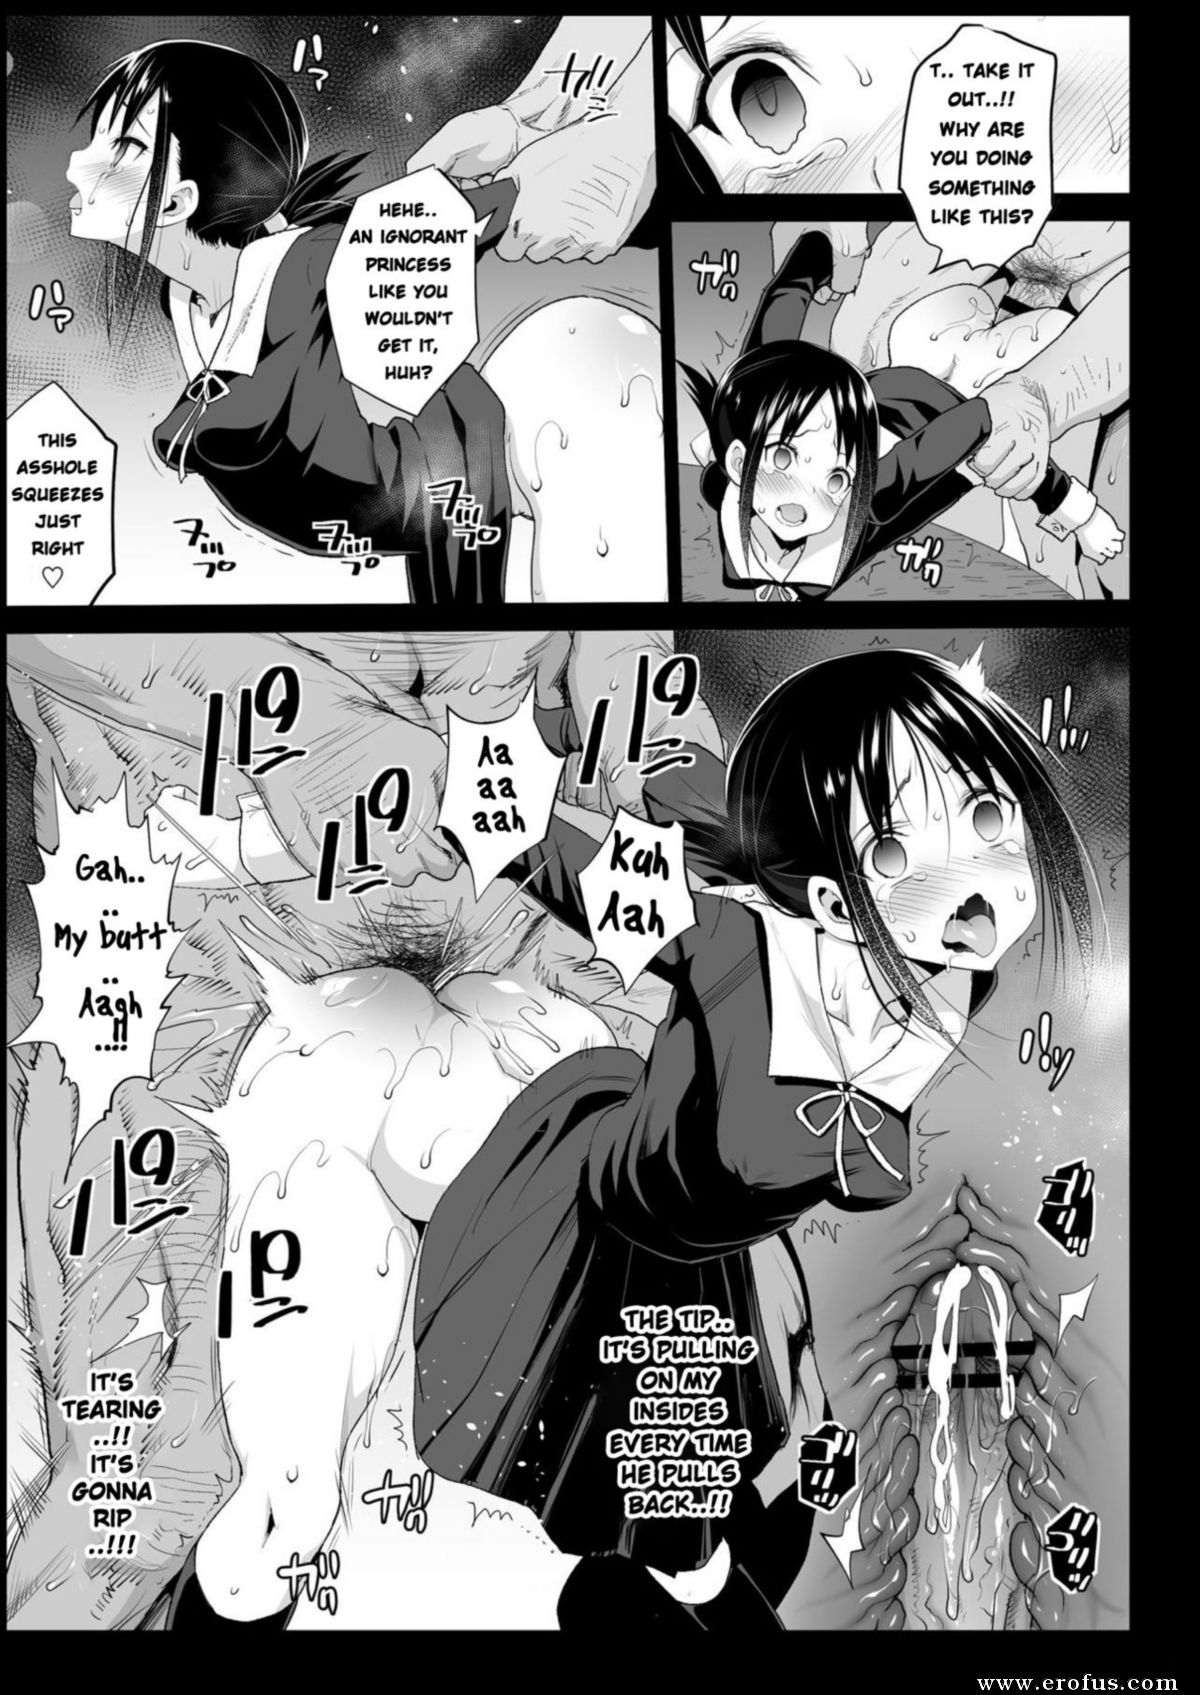 Manga porn rape